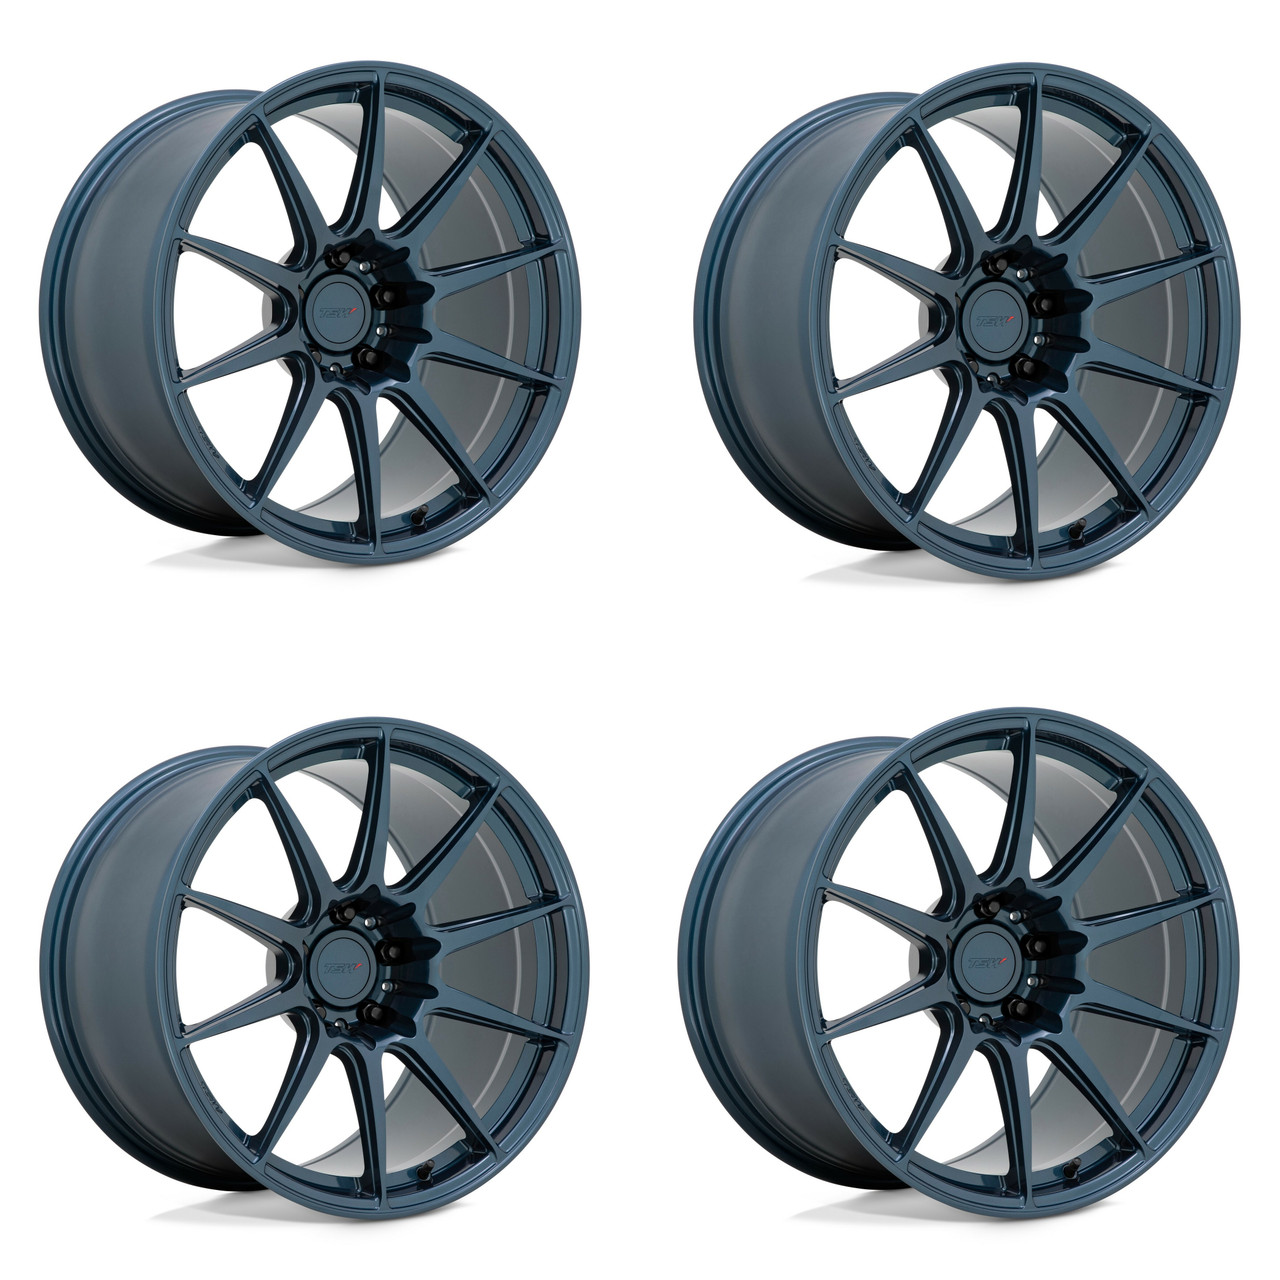 Set 4 TSW Kemora 18x9.5 5x4.5 Gloss Dark Blue Wheels 18" 38mm Rims